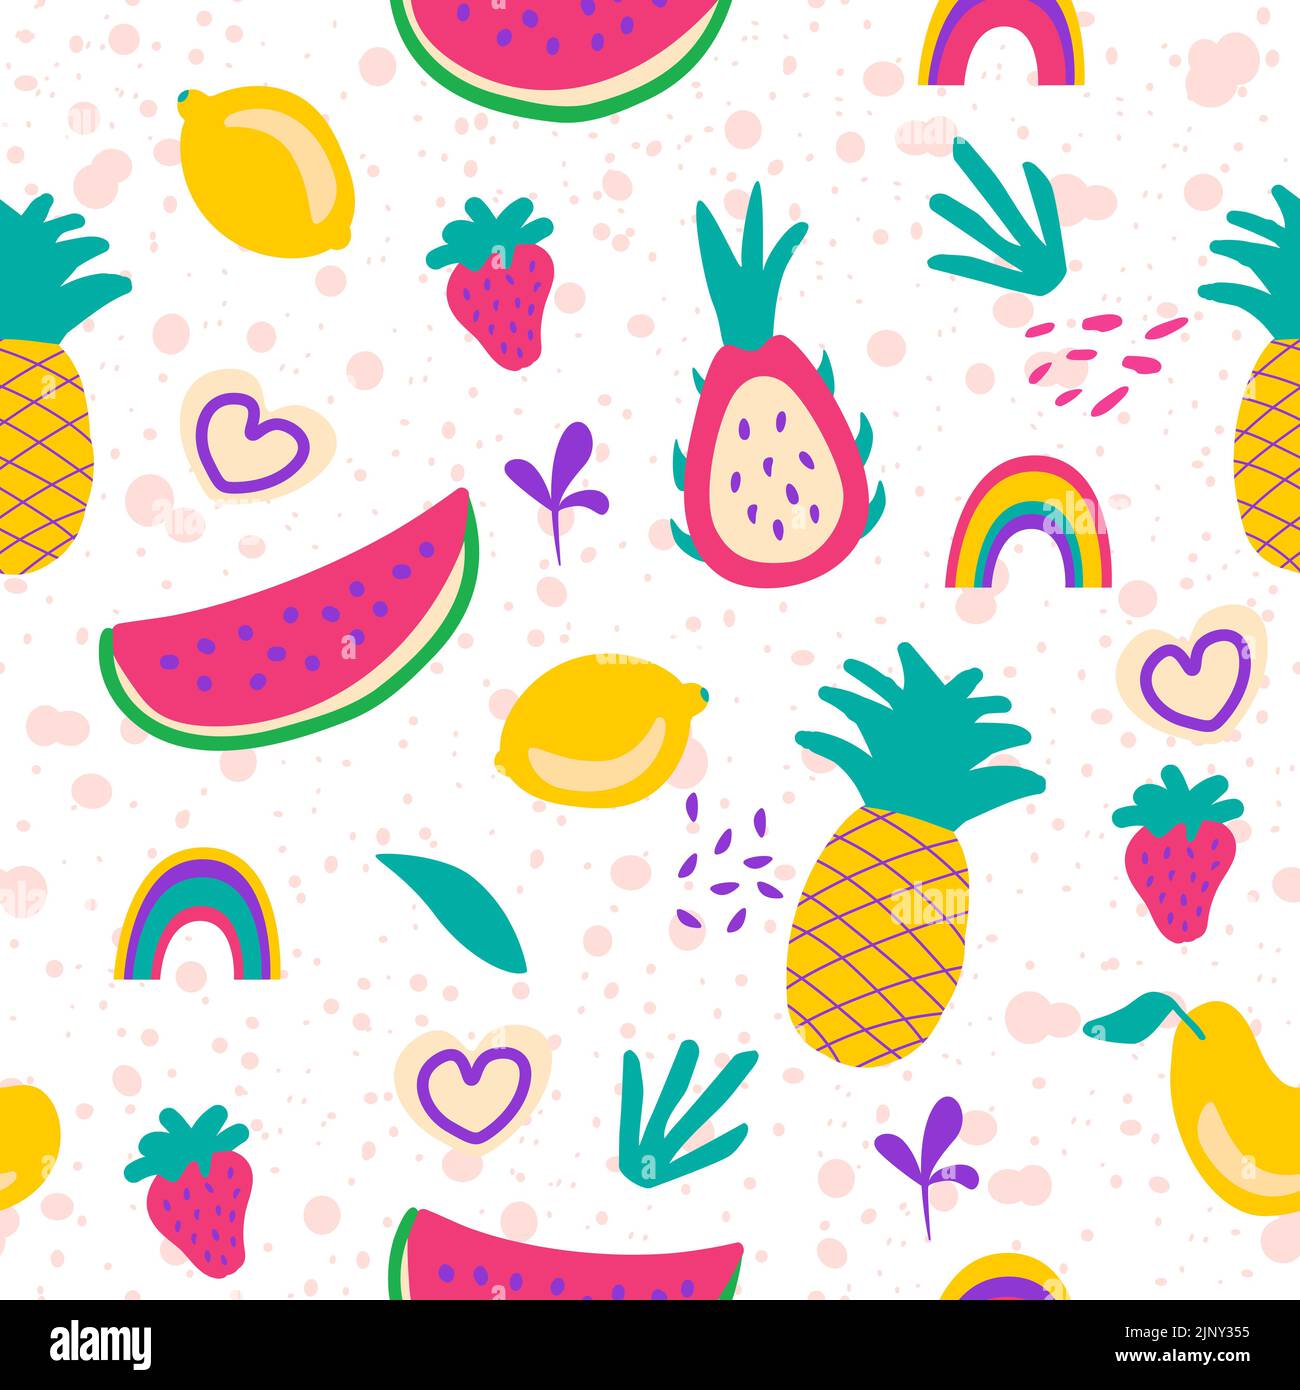 Nahtloses Muster mit Früchten und Pflanzen auf kreativem Hintergrund - Vektorgrafik. Zitrone, Wassermelone, Ananas, Erdbeere, Mango, drachenfrucht, pi Stock Vektor